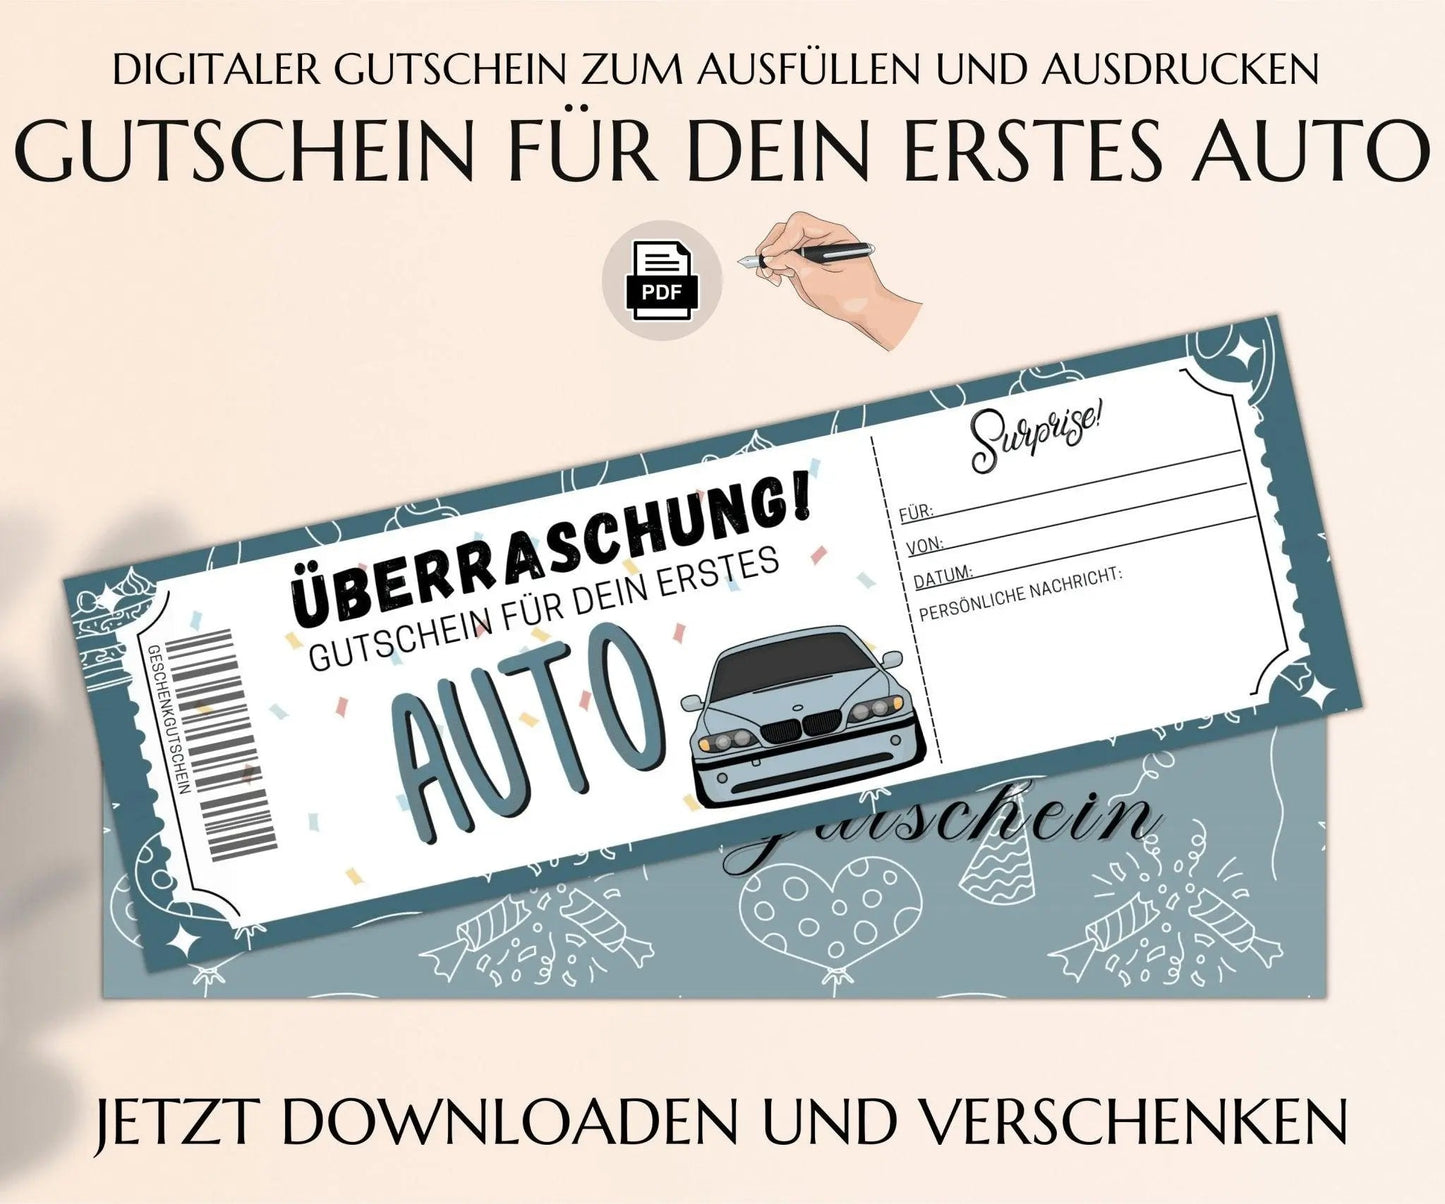 Gutschein für dein erstes Auto Vorlage - JSKDesignStudio.de